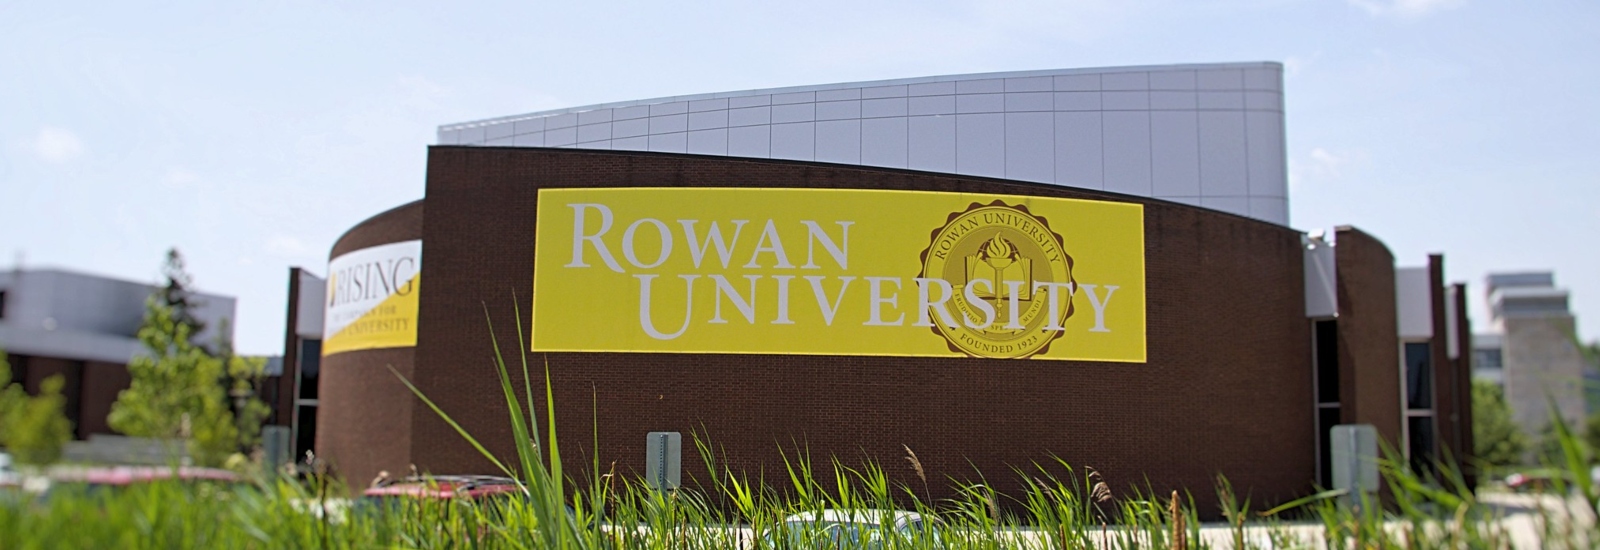 The Rowan University Banner on Wilson Hall.